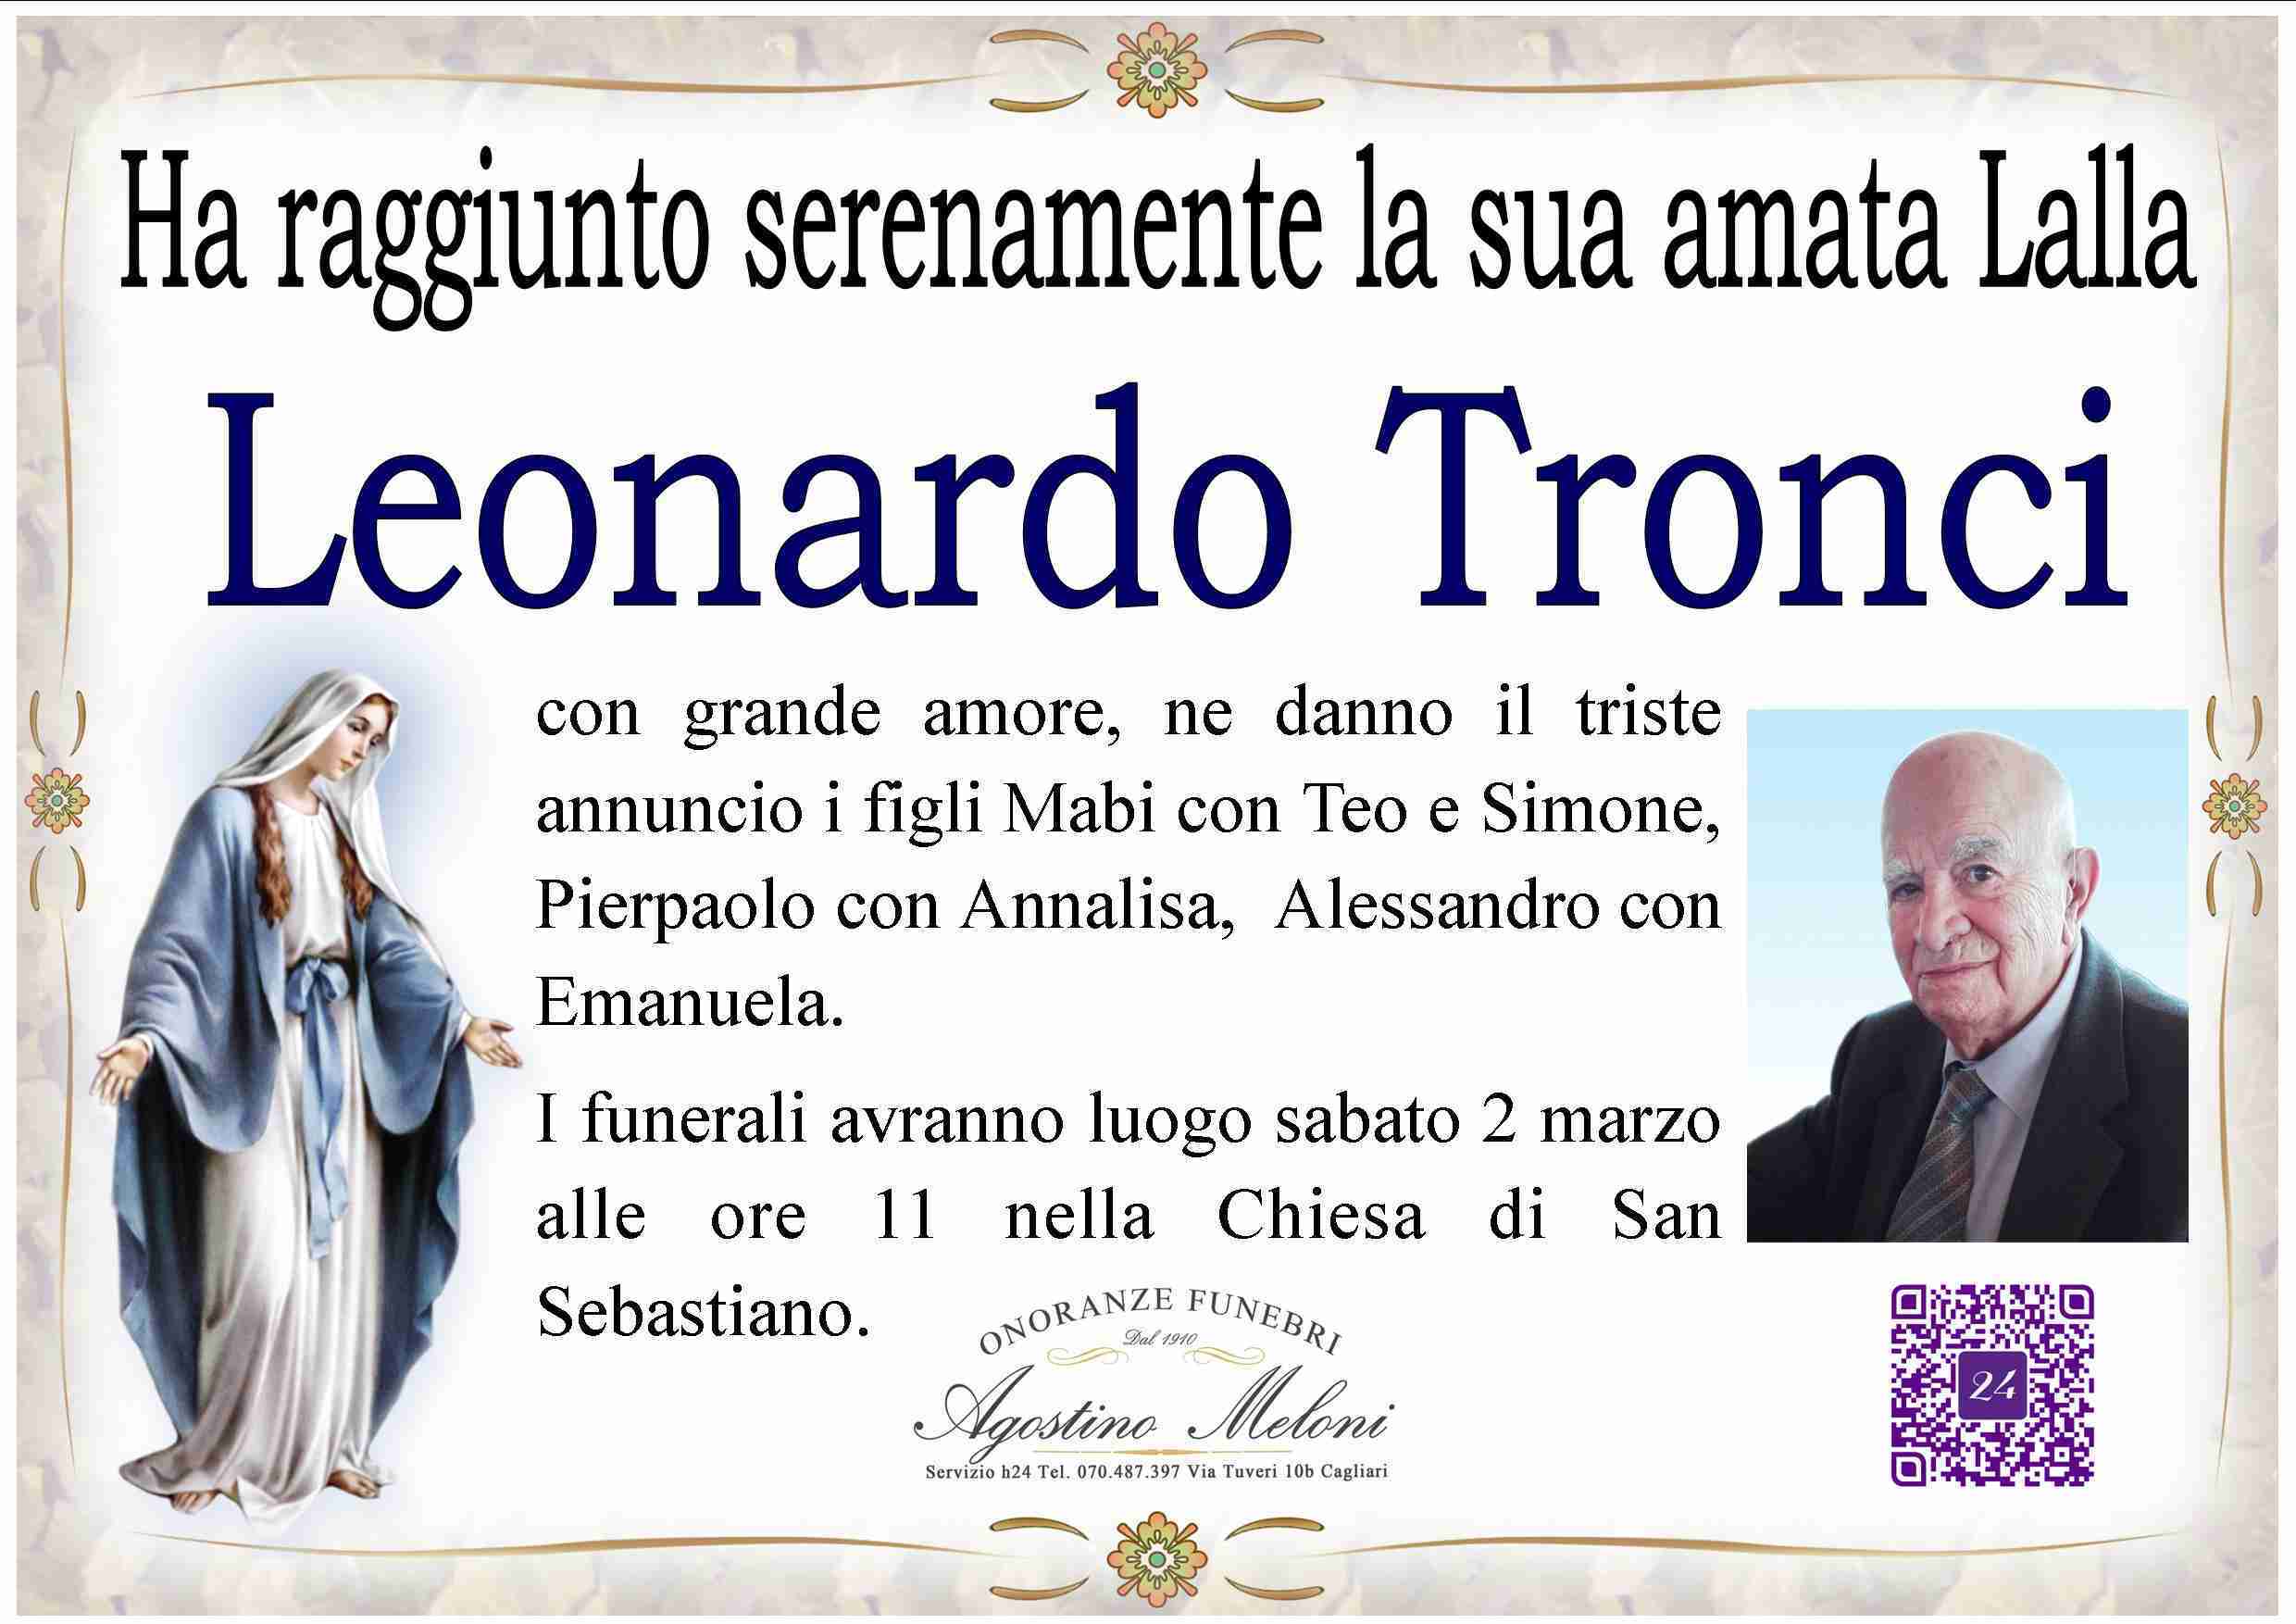 Leonardo Tronci